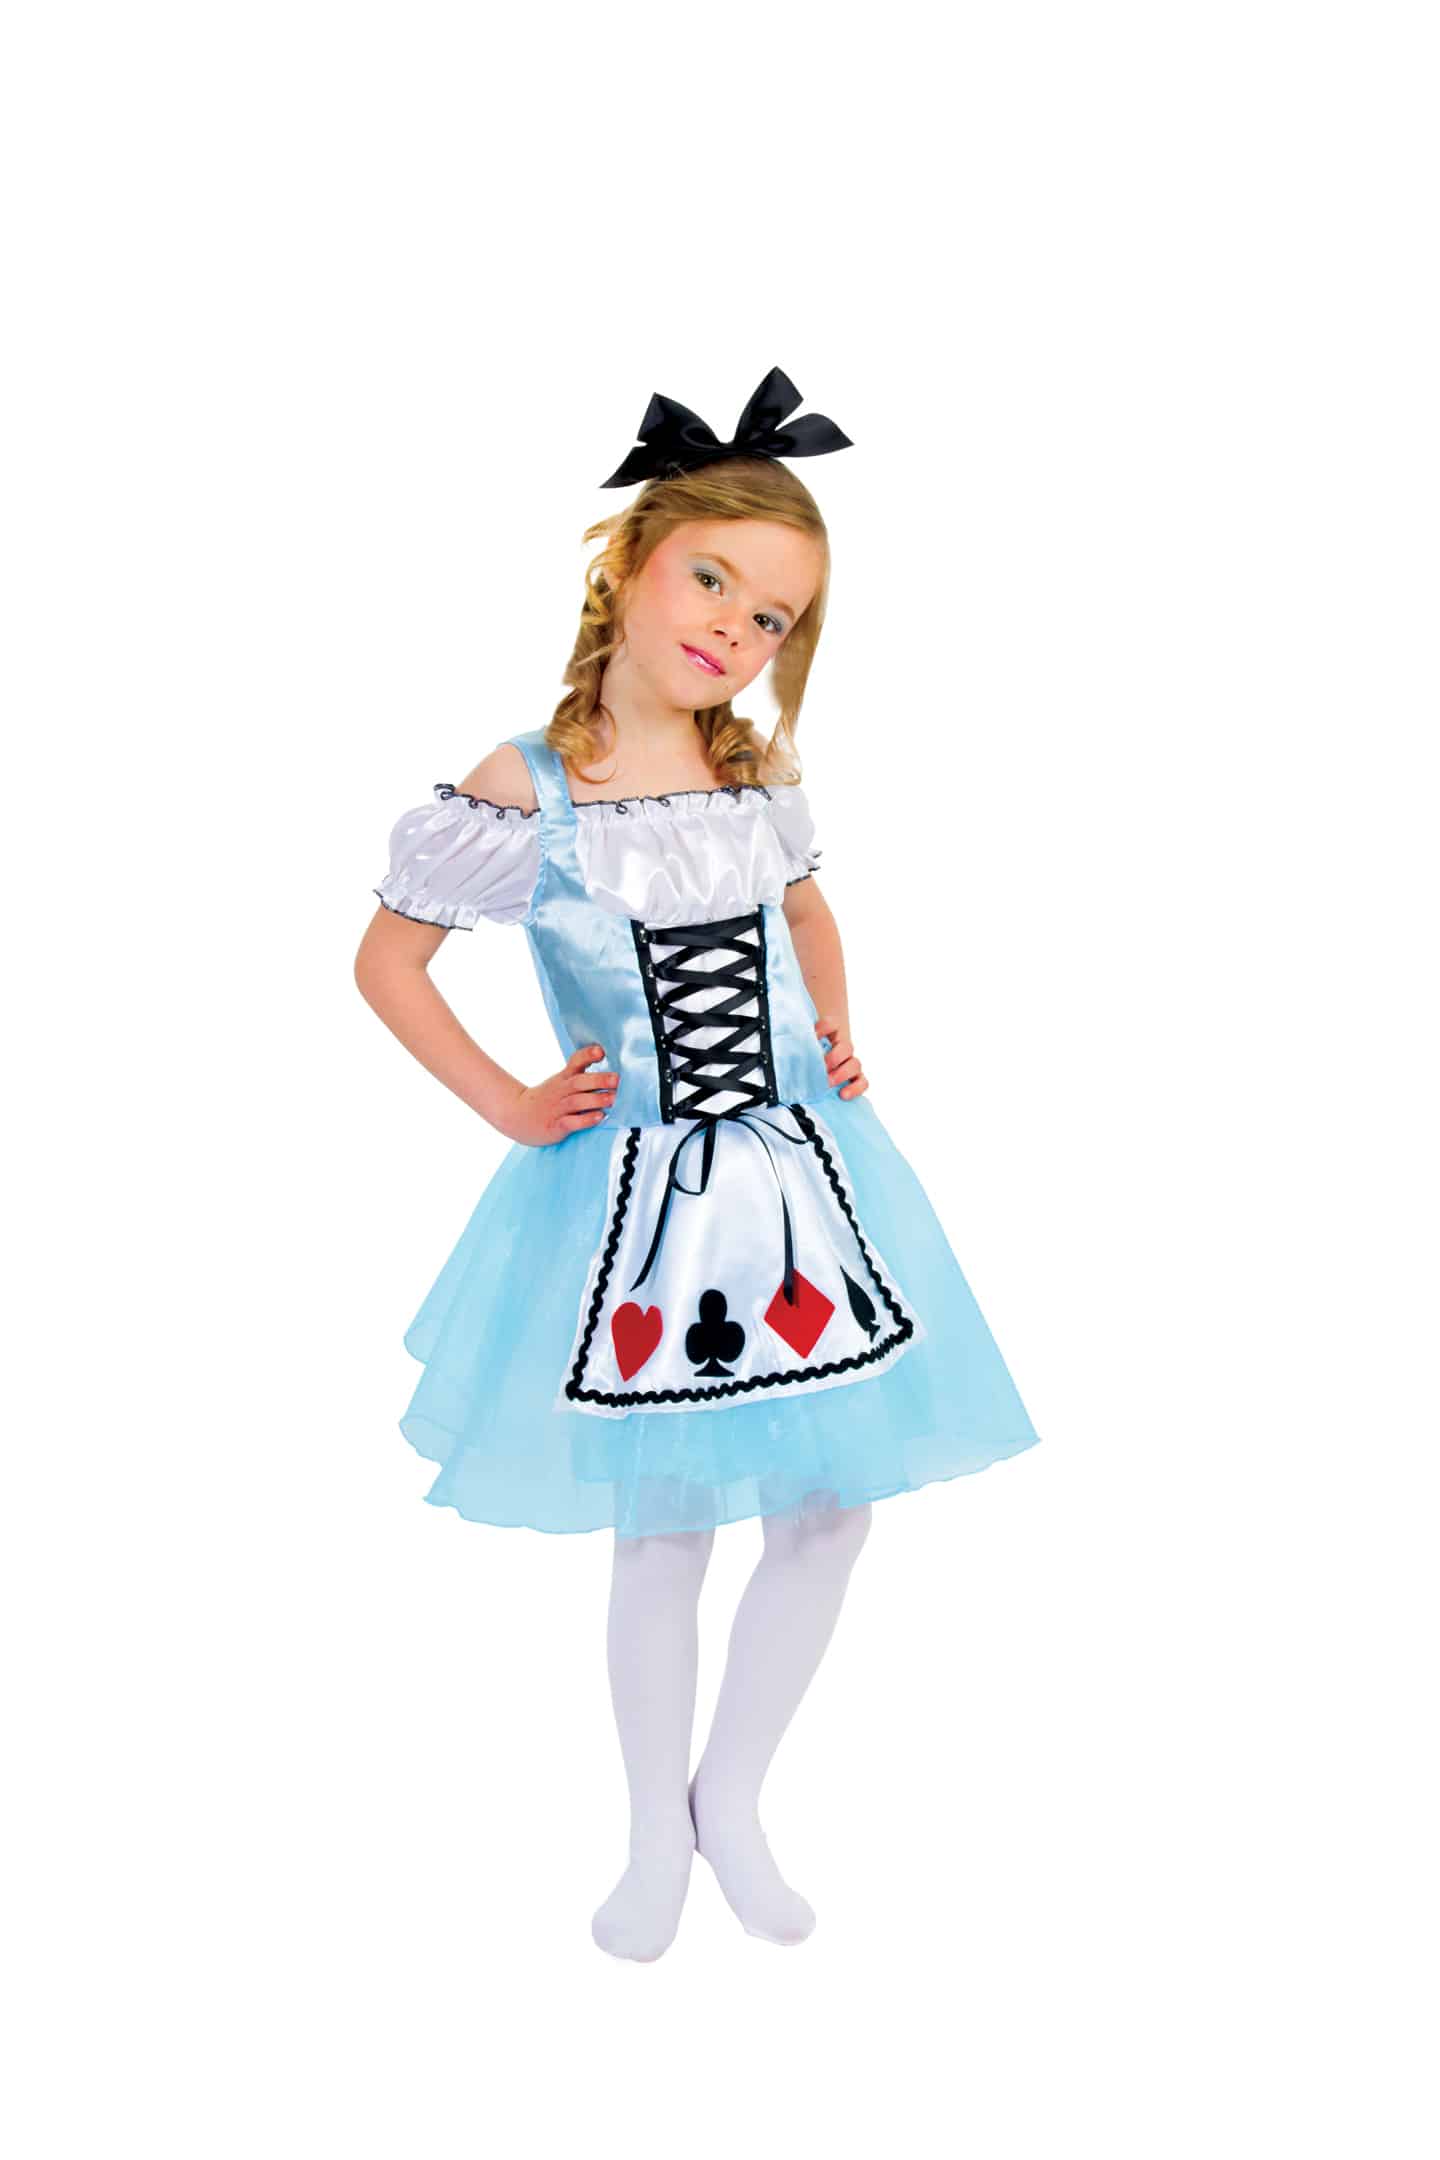 Costume da Alice nel Paese delle Meraviglie - Fantaparty.it